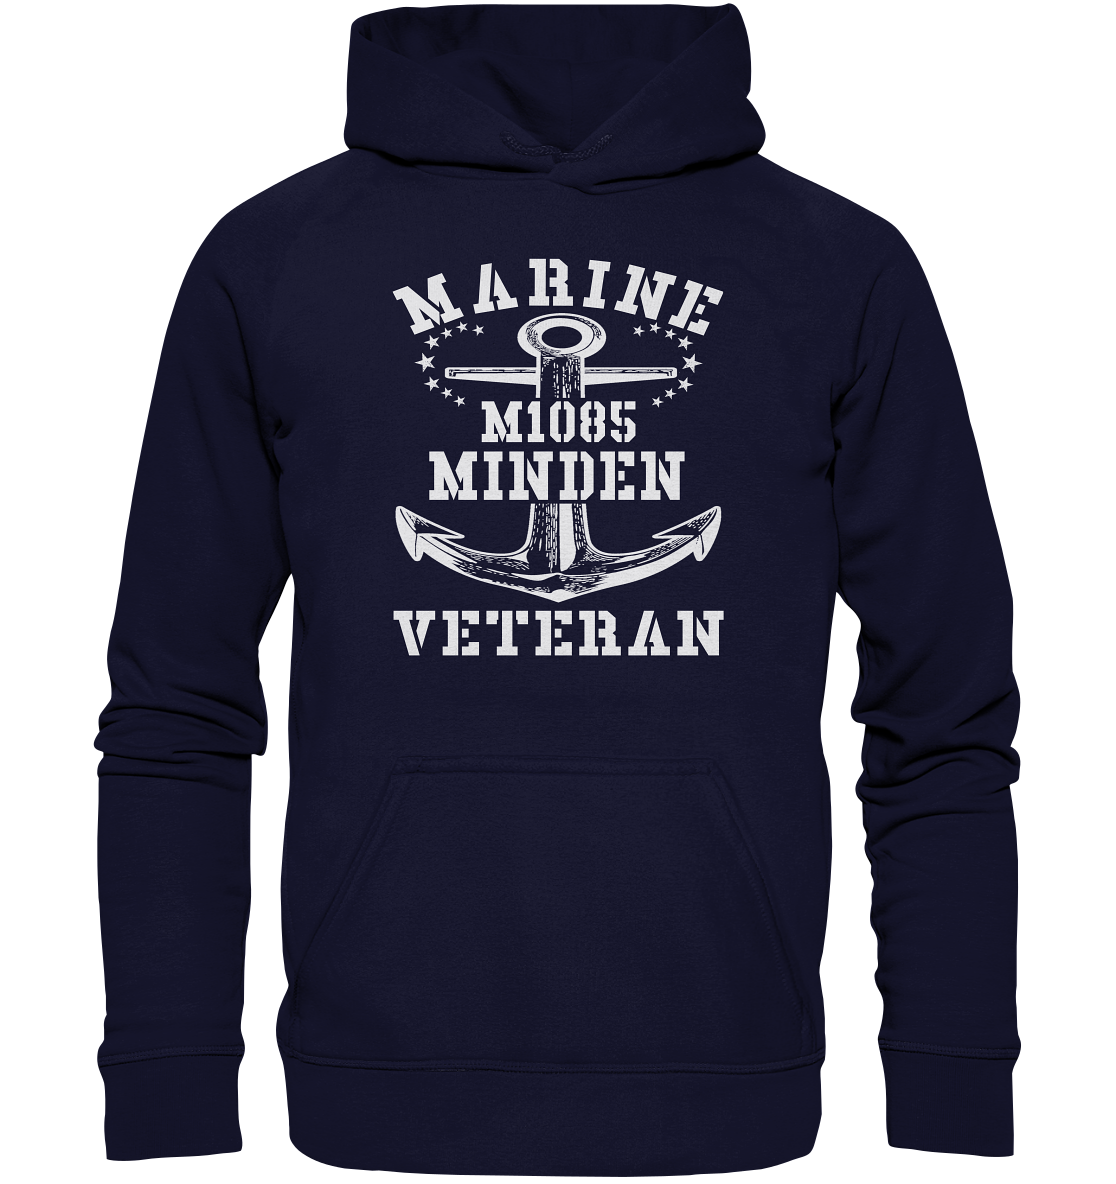 Marine Veteran M1085 MINDEN - Basic Unisex Hoodie XL